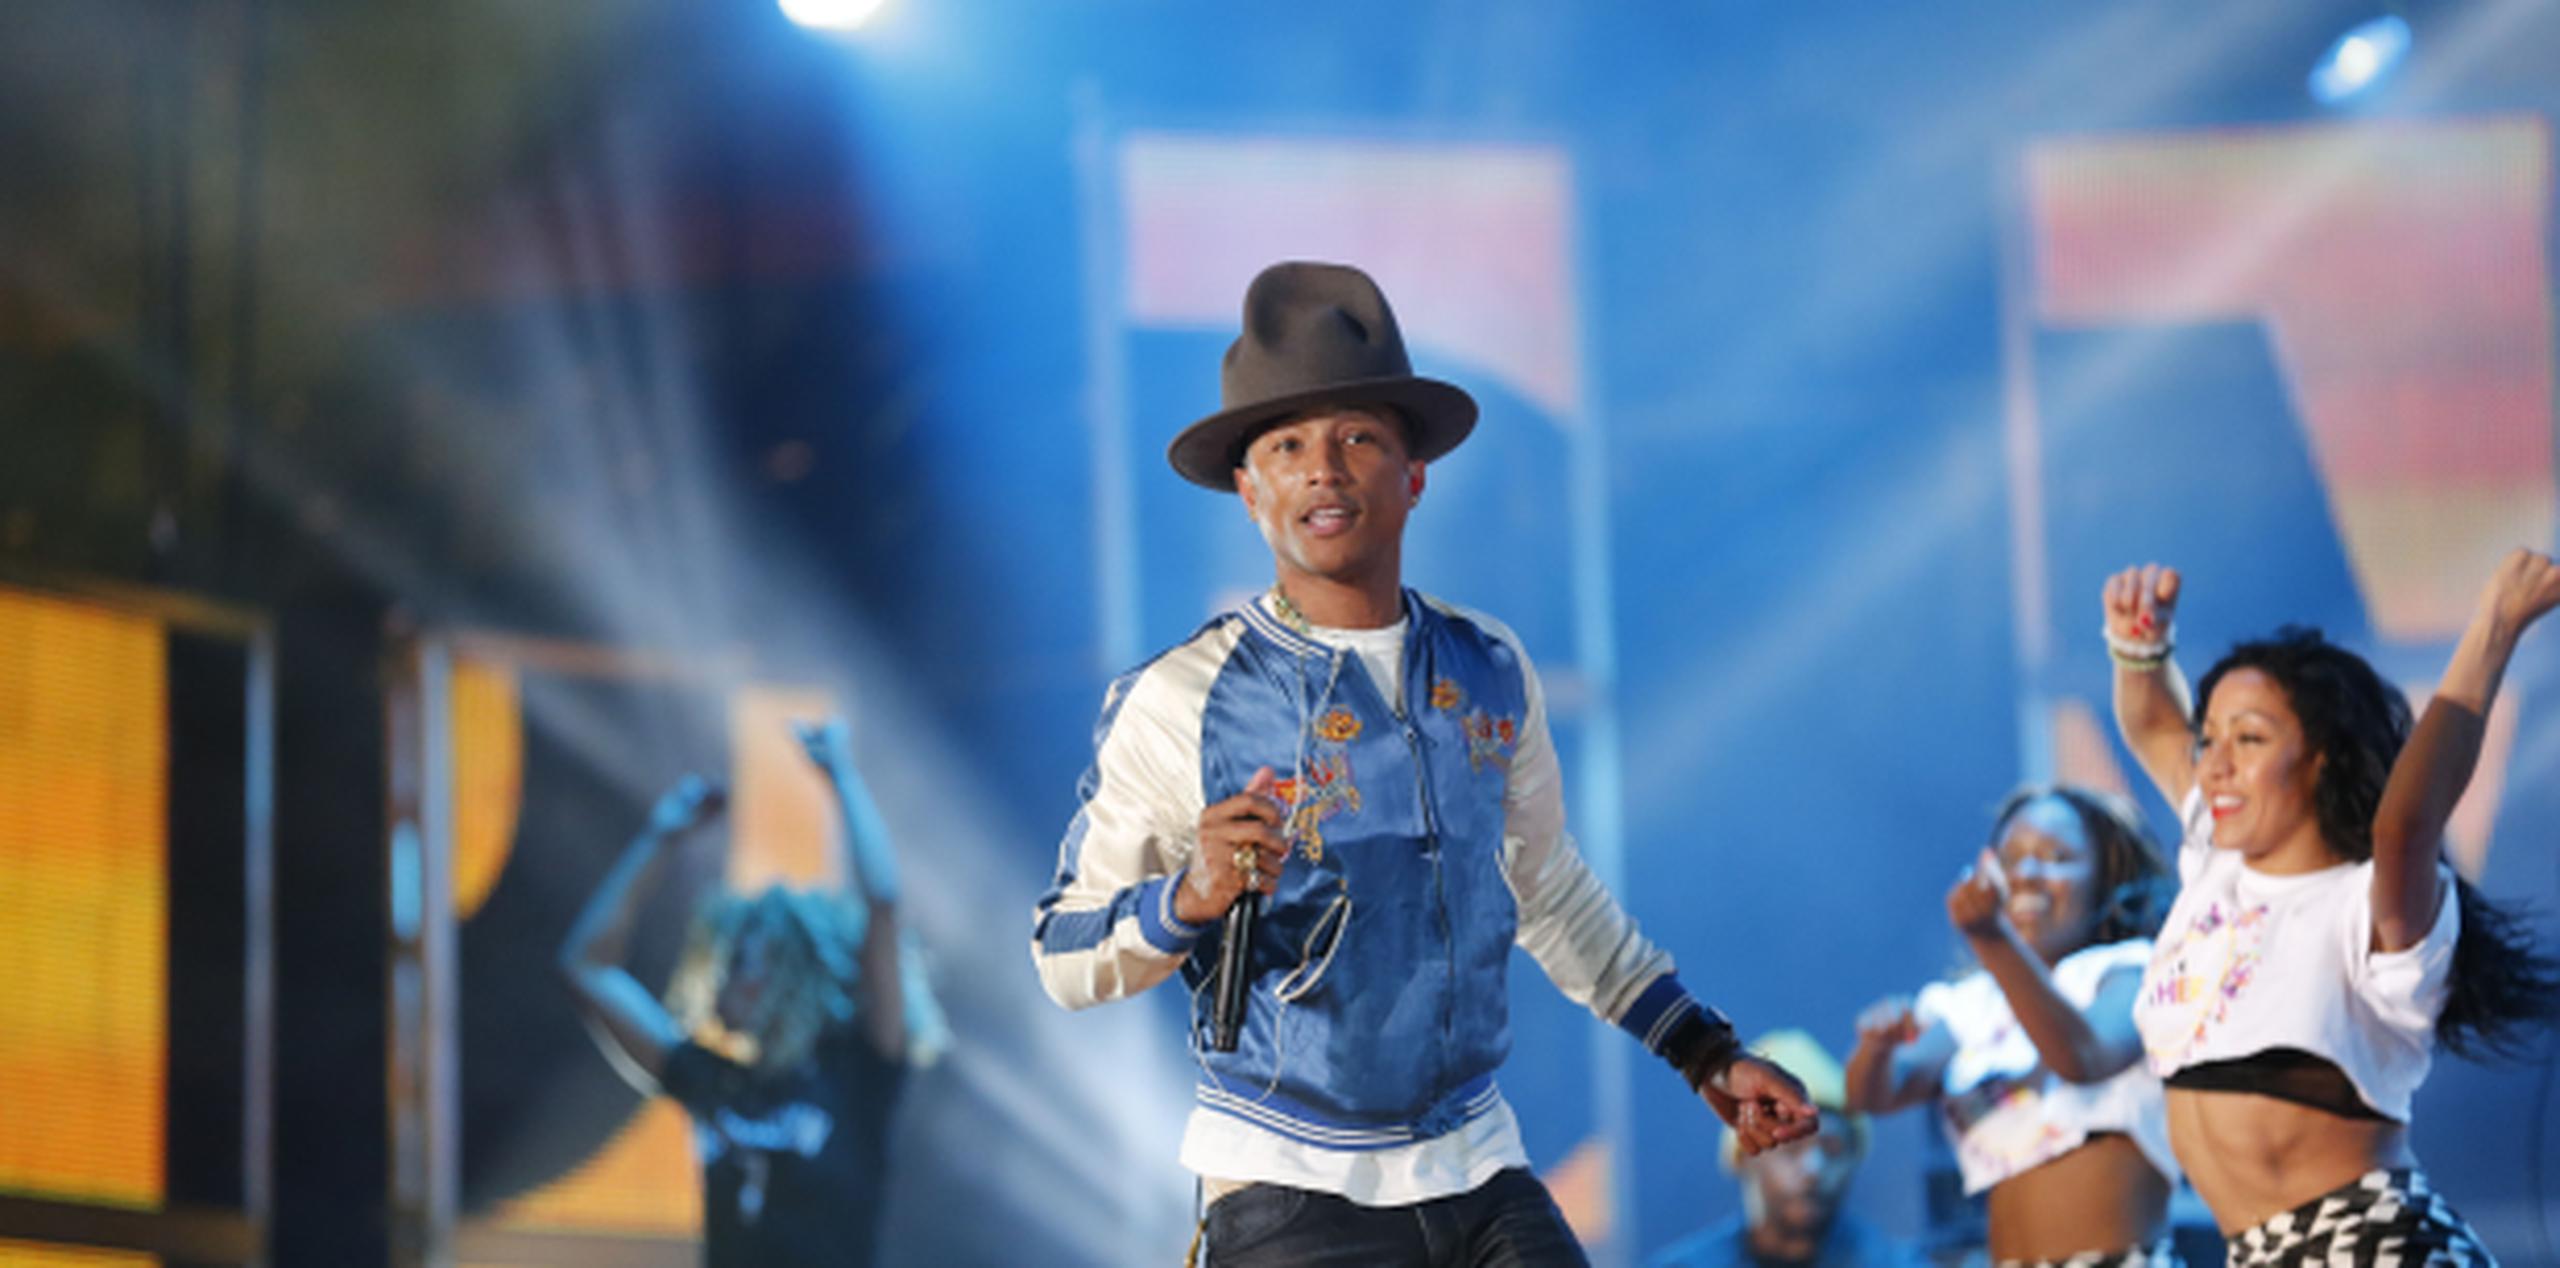 La canción "Happy" del cantante Pharrell William es el tema principal del filme animado "Despicable Me 2". (AP)